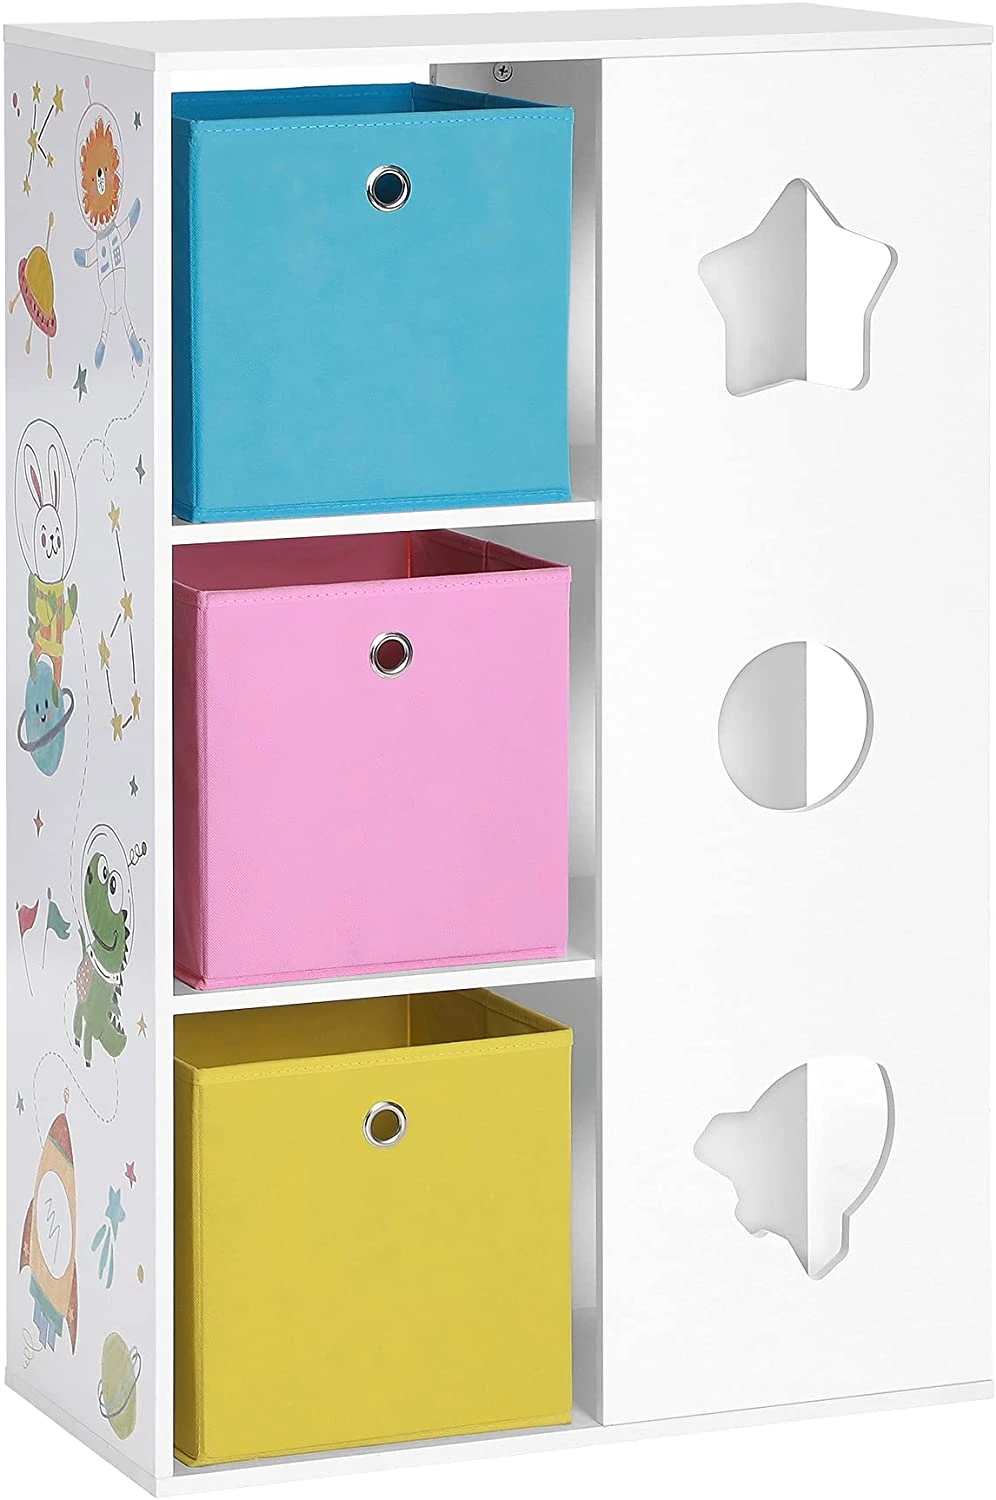 Kinderkamerplank, speelplank, speelgoedopslag, multifunctionele opbergdozen, plank, voor kinderkamers, speelkamers, wit, blauw, roze en geel - SimpleDeal.nl